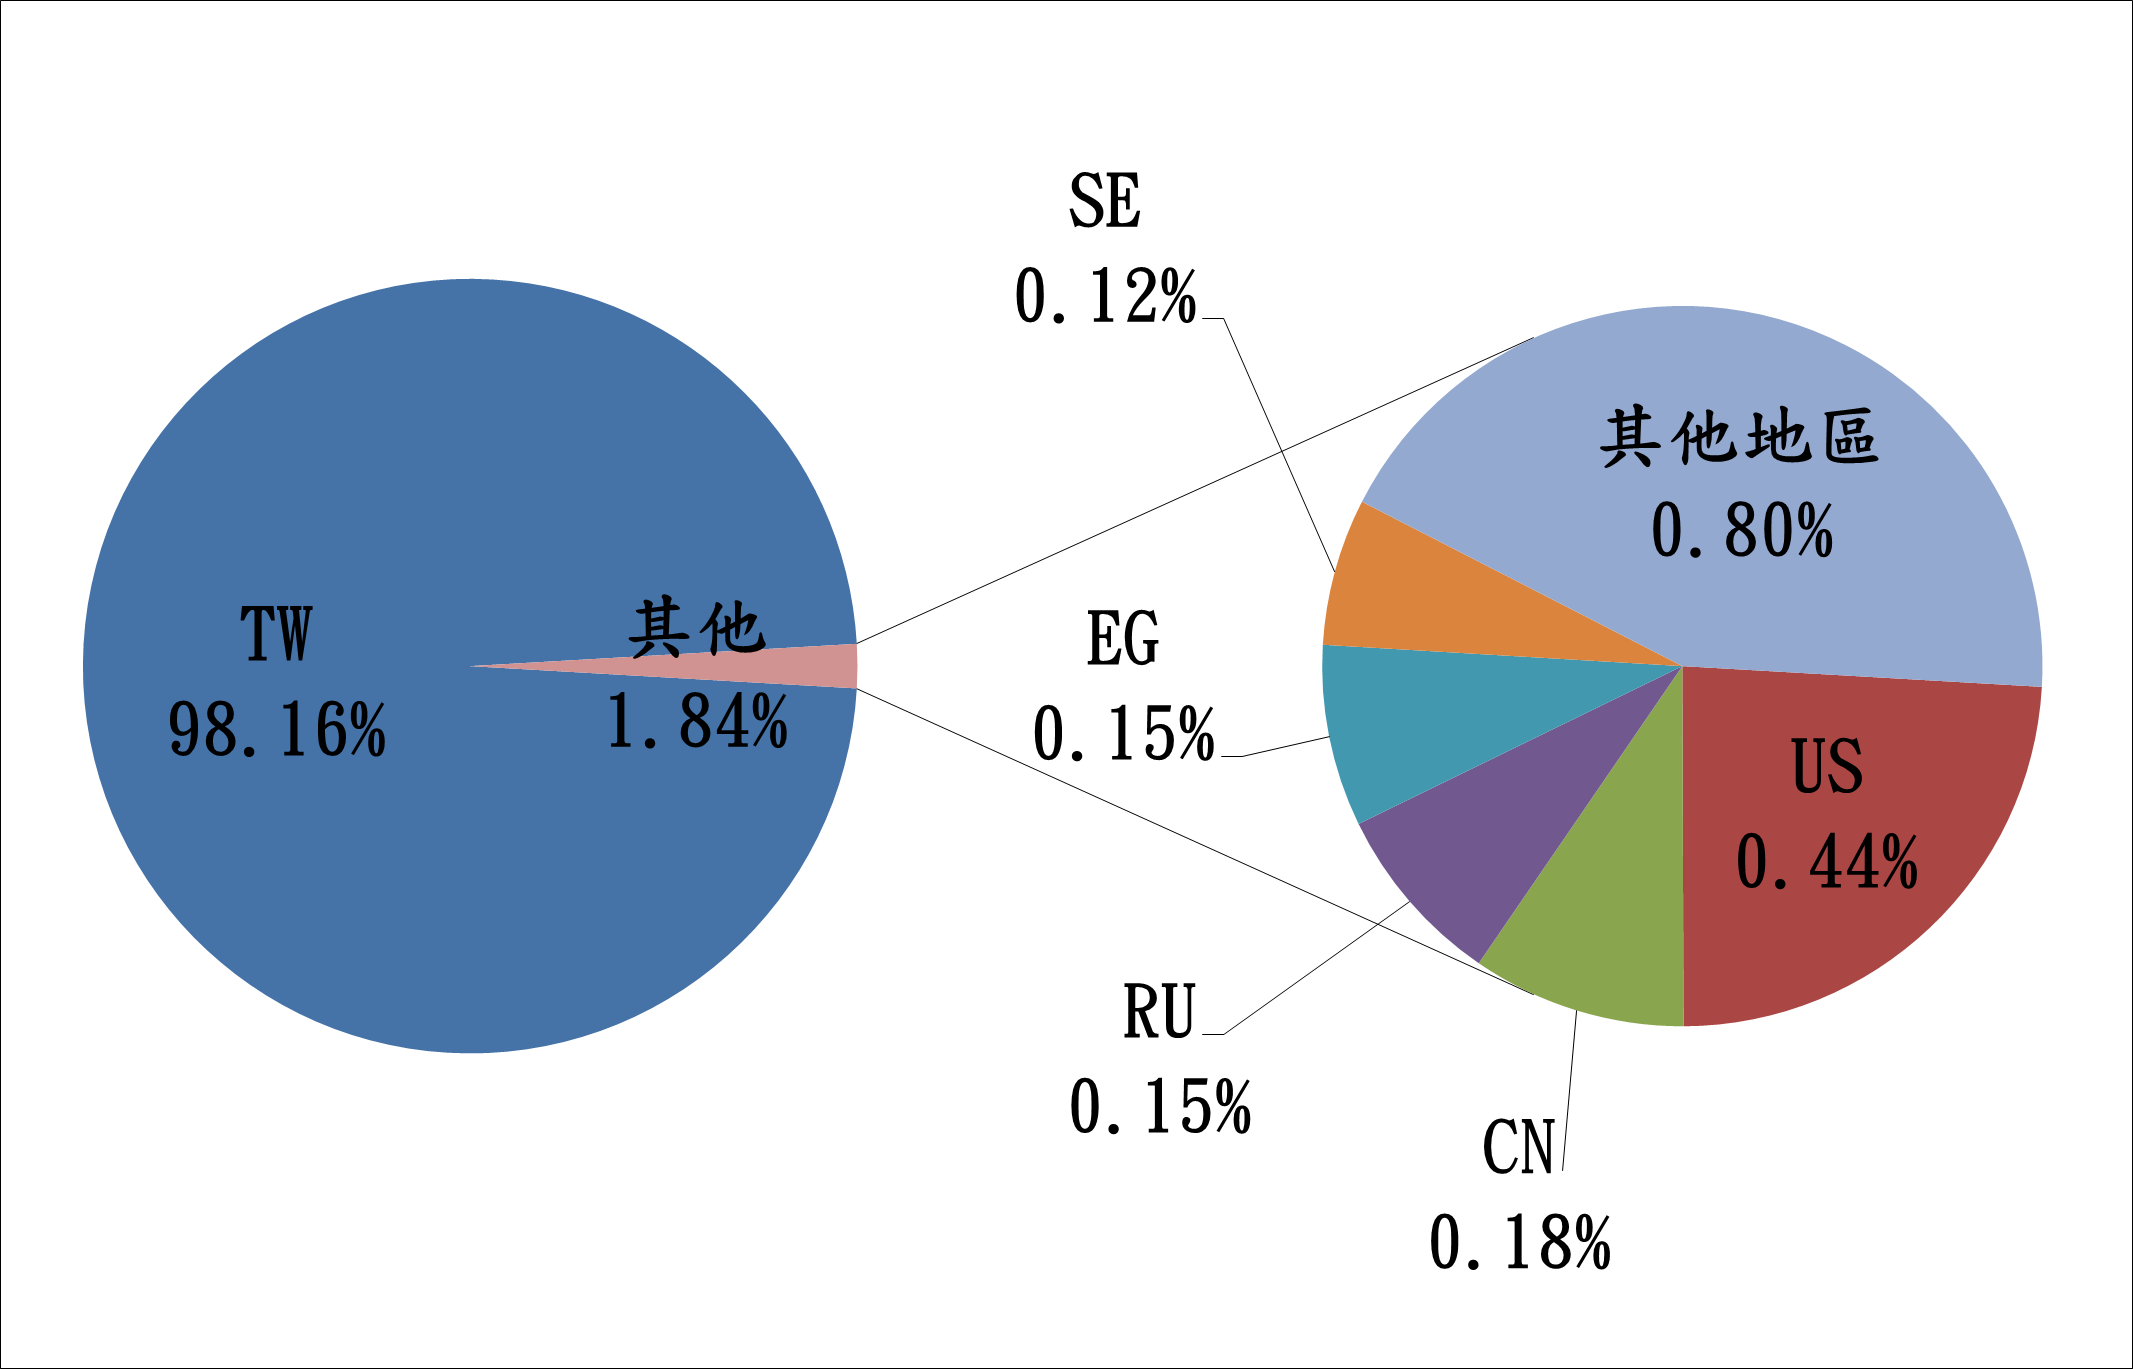 TW98.16% 其他1.84% SE0.12% EG0.15% RU0.15% CN0.18% US0.44% 其他地區0.80%